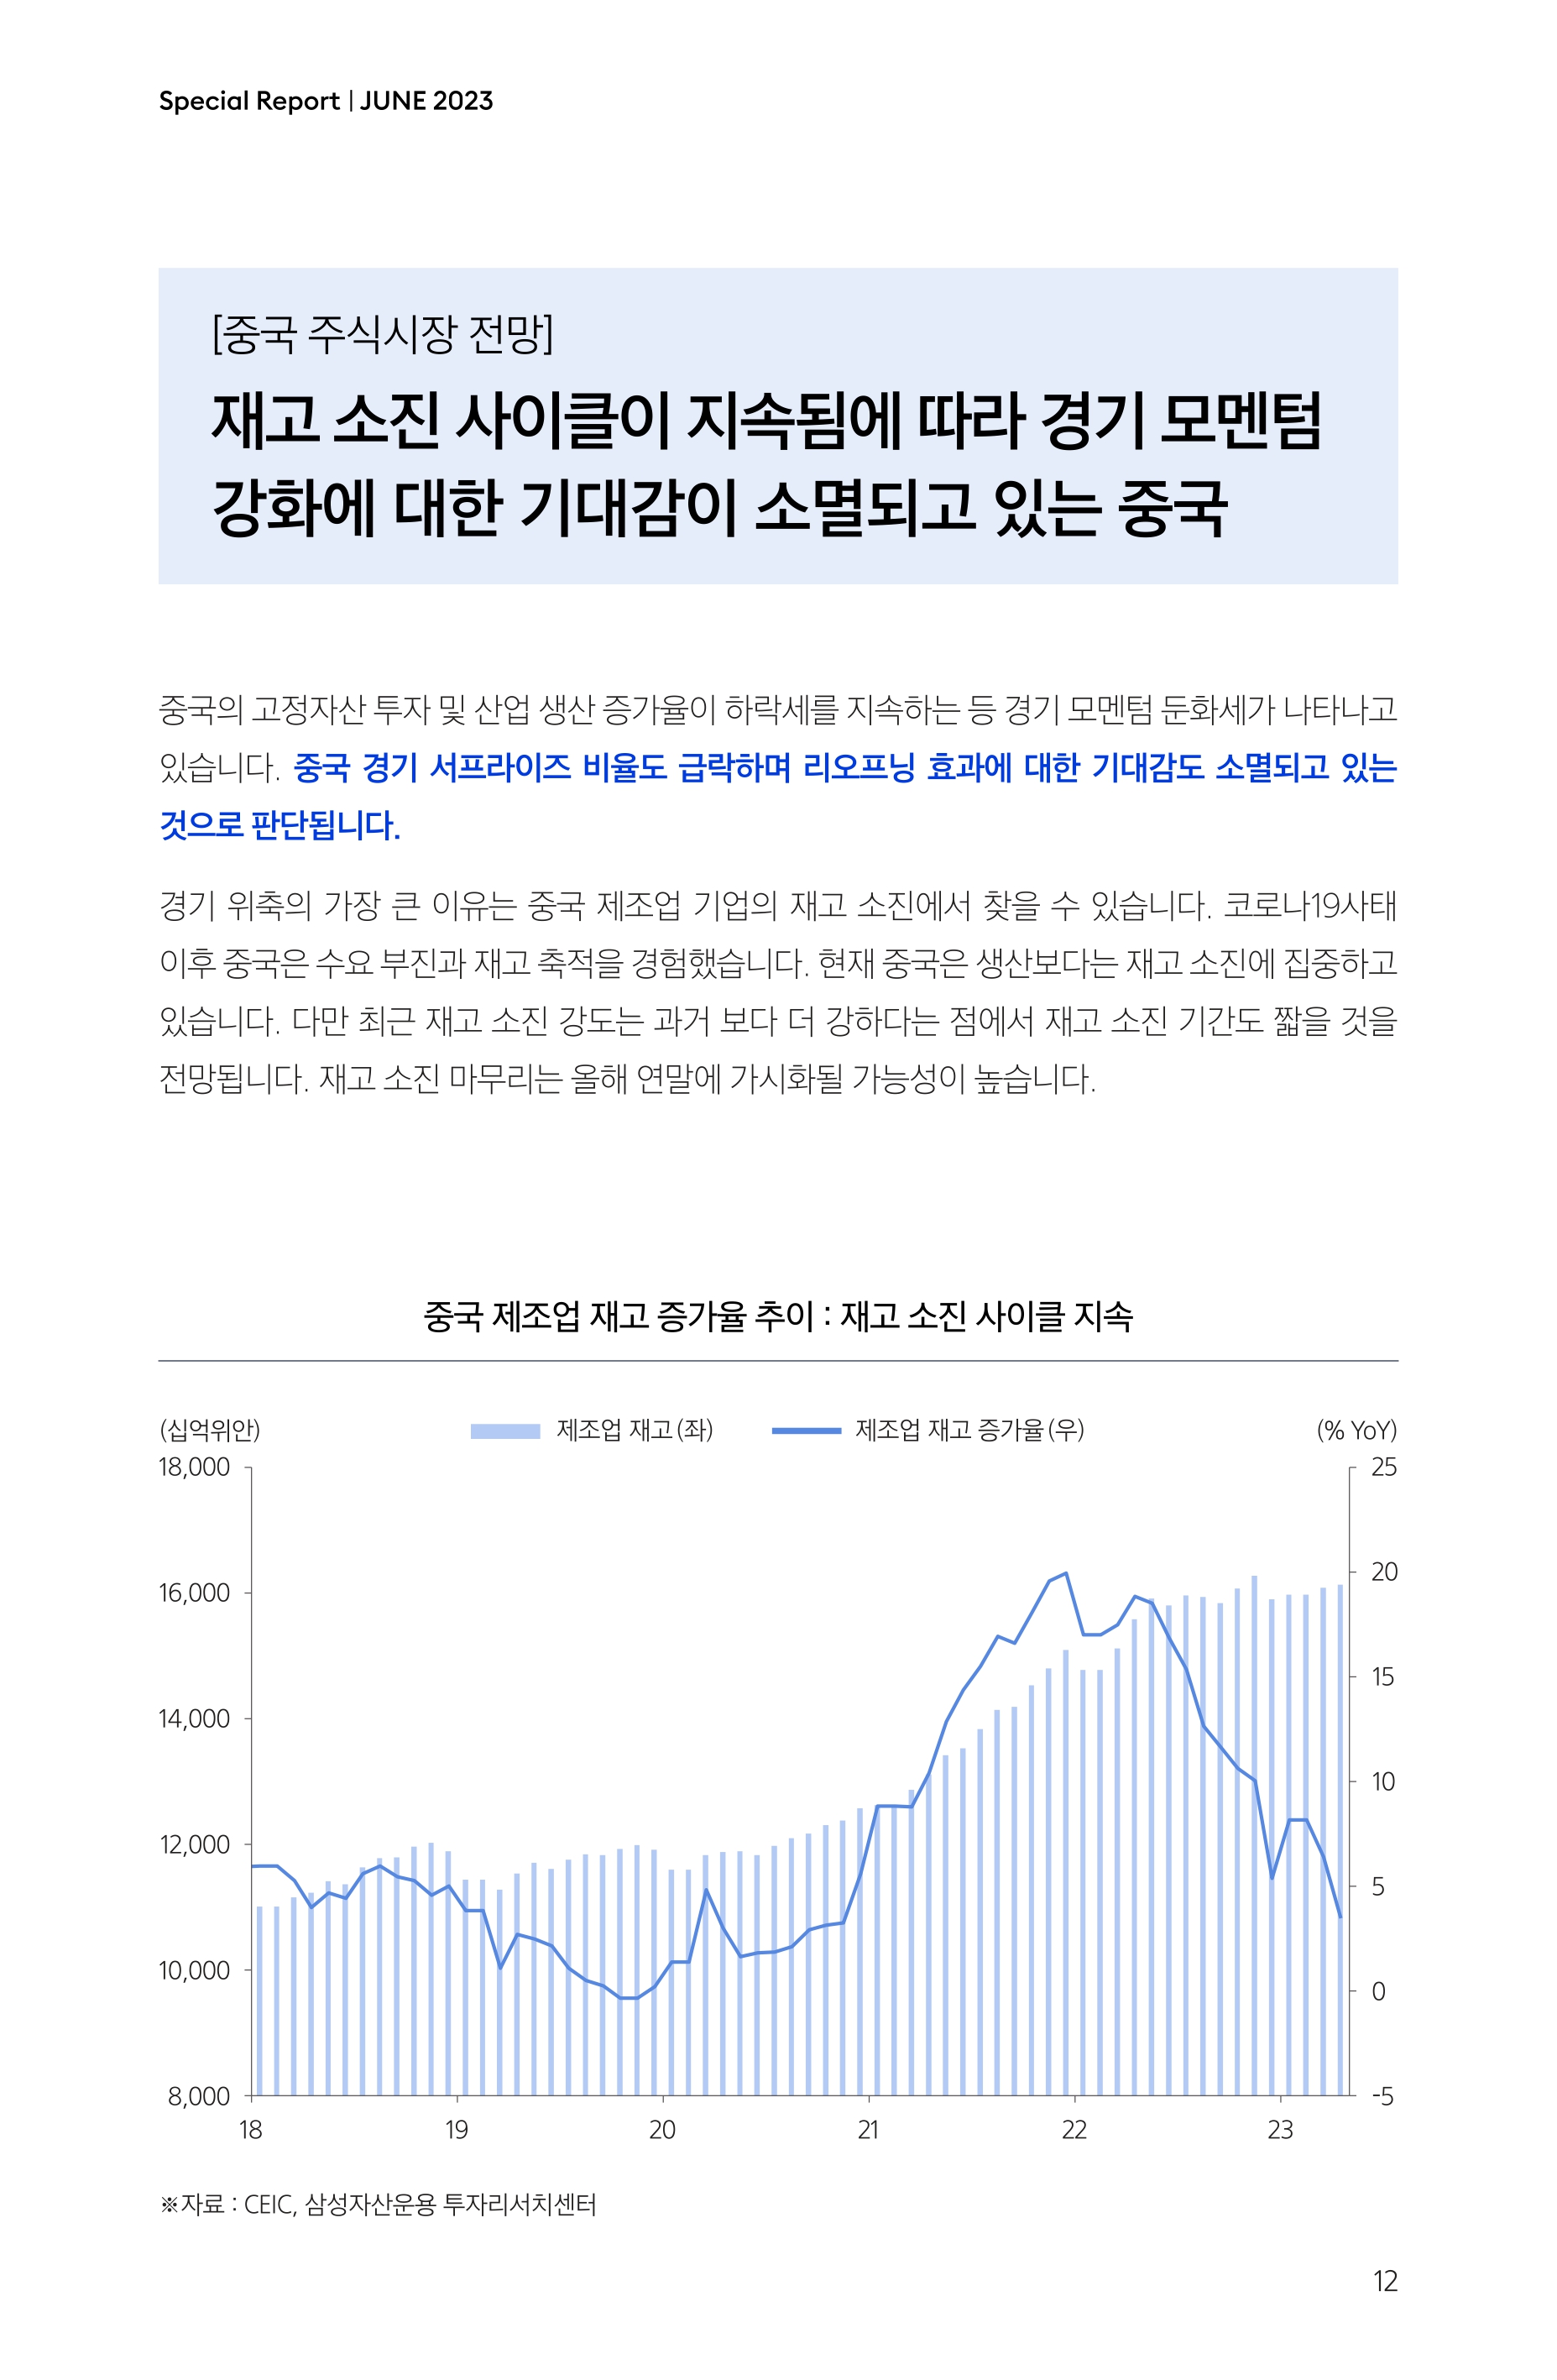 Samsung Global Market Outlook(낱장)_202306_page-0012.jpg